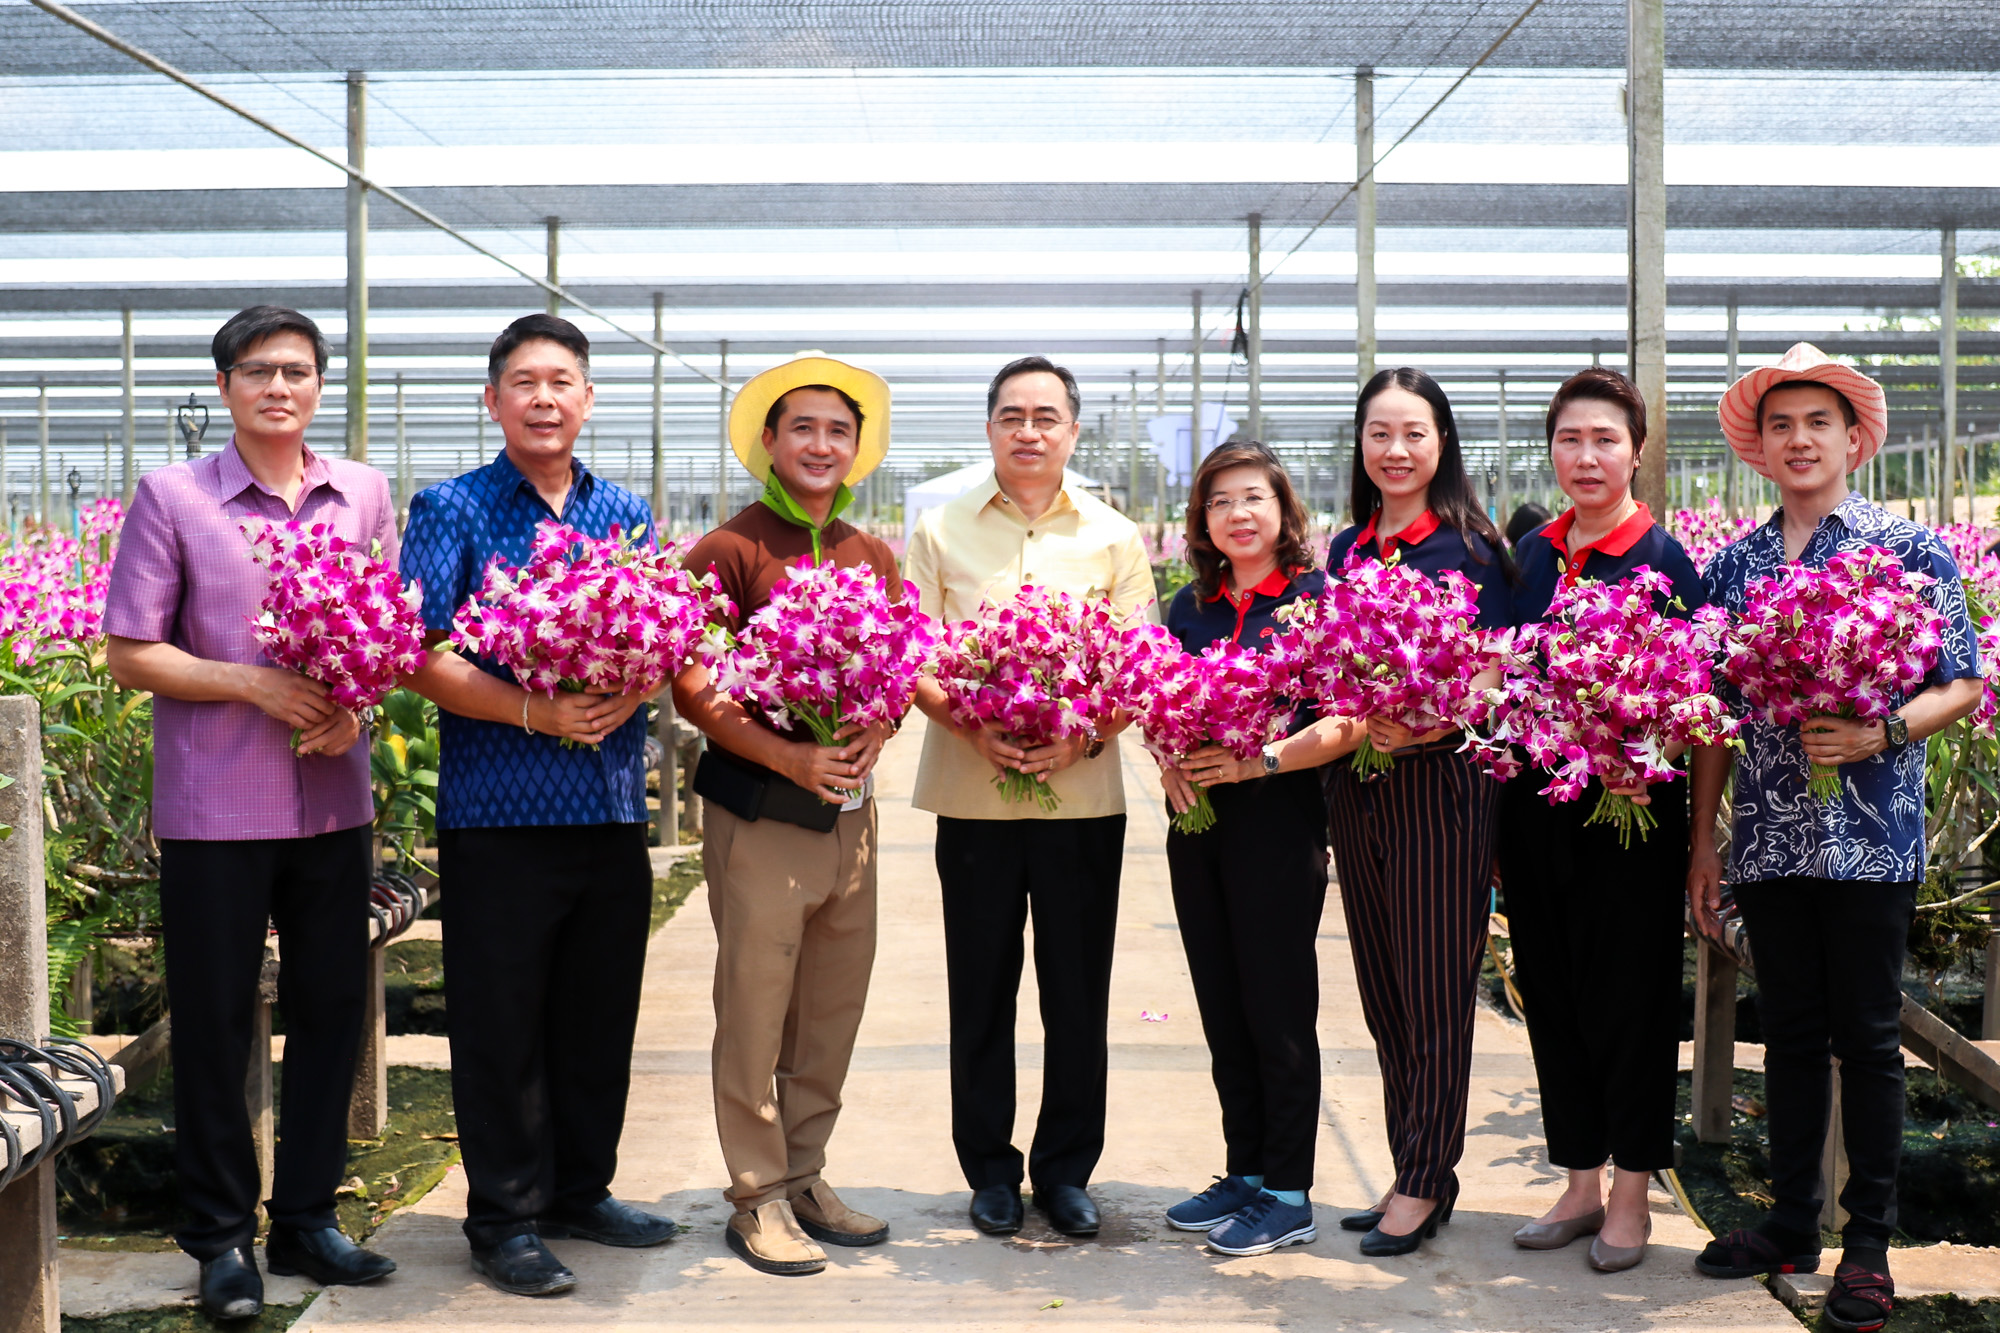 เซ็นทรัลพัฒนา หนุนเศรษฐกิจไทย เปิดพื้นที่ฟรีช่วยเกษตรกร ชวนไทยอุดหนุนไทย ช้อป ชมกล้วยไม้ พร้อมเตรียมแผนช่วยผู้ประกอบการอีกหลายรายทั่วประเทศ